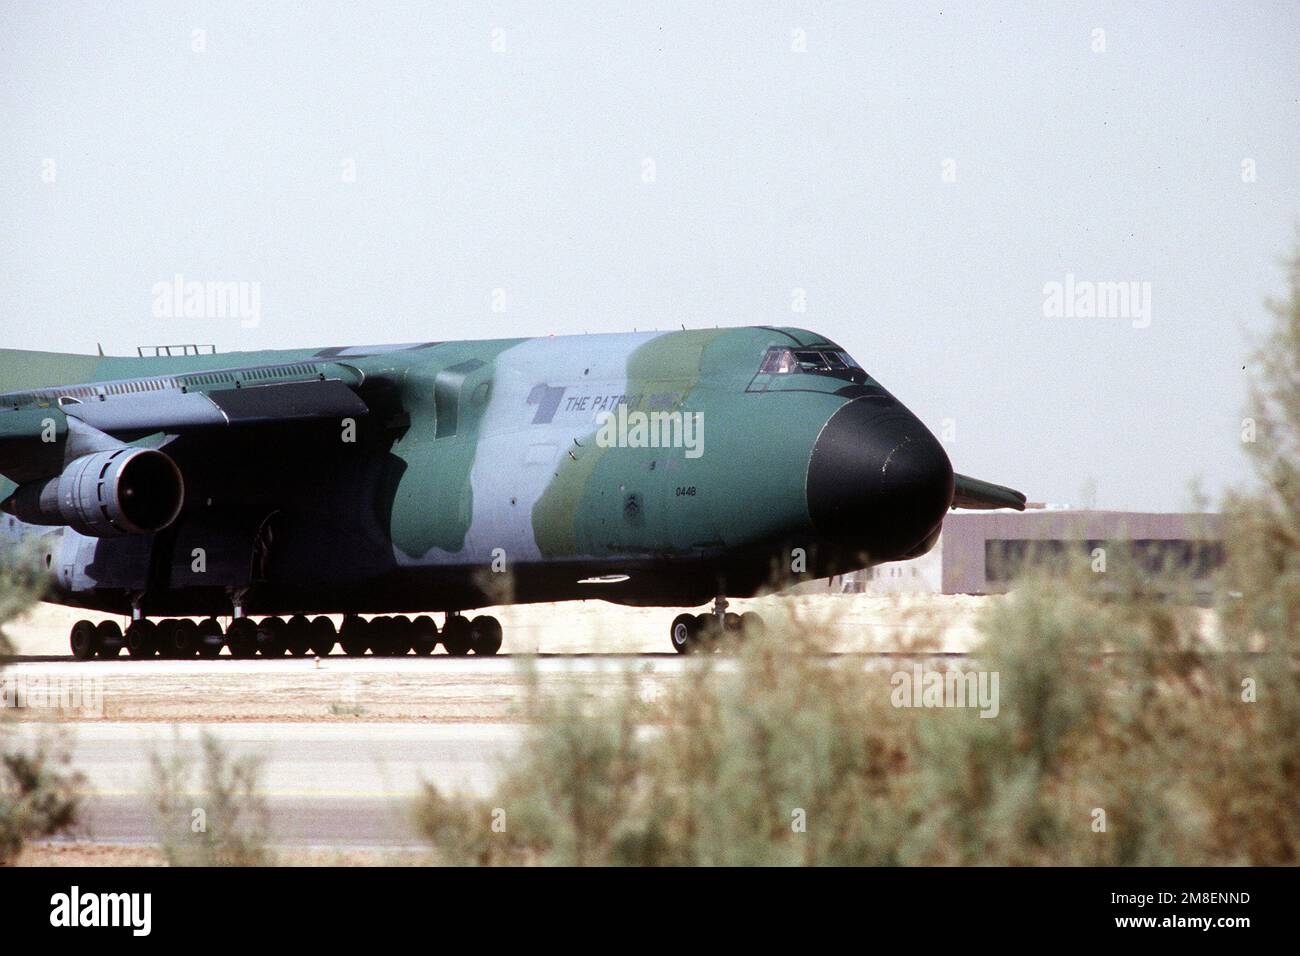 Un avion Galaxy C-5A se prépare à décoller à l'appui de l'opération Desert Shield. Objet opération/série : OPÉRATION DESERT SHIELD pays : Arabie saoudite (SAU) Banque D'Images